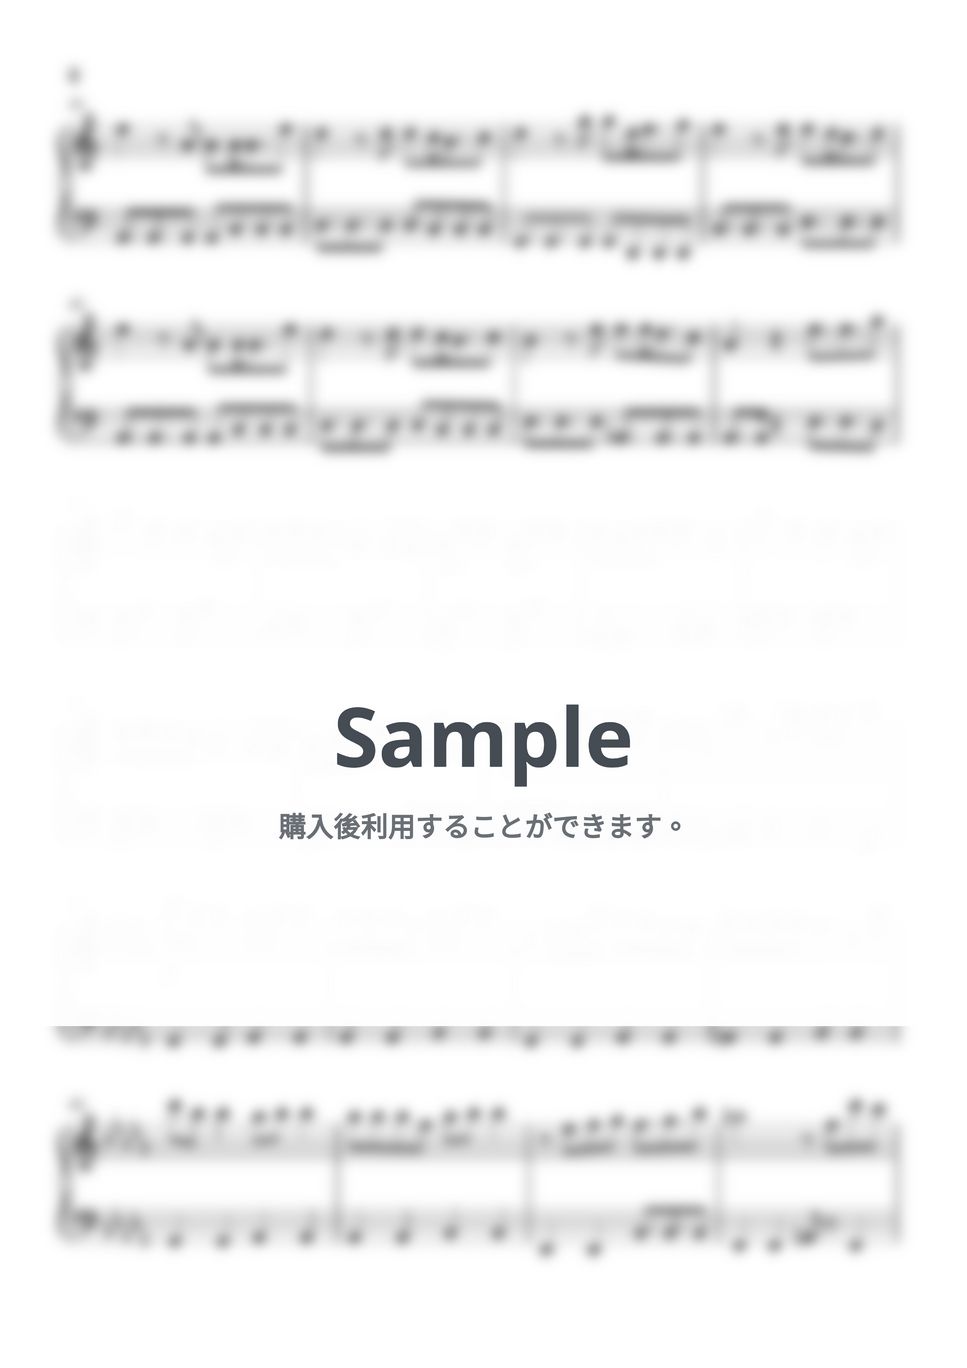 MAISONdes - アイワナムチュー (うる星やつら) by Piano Lovers. jp